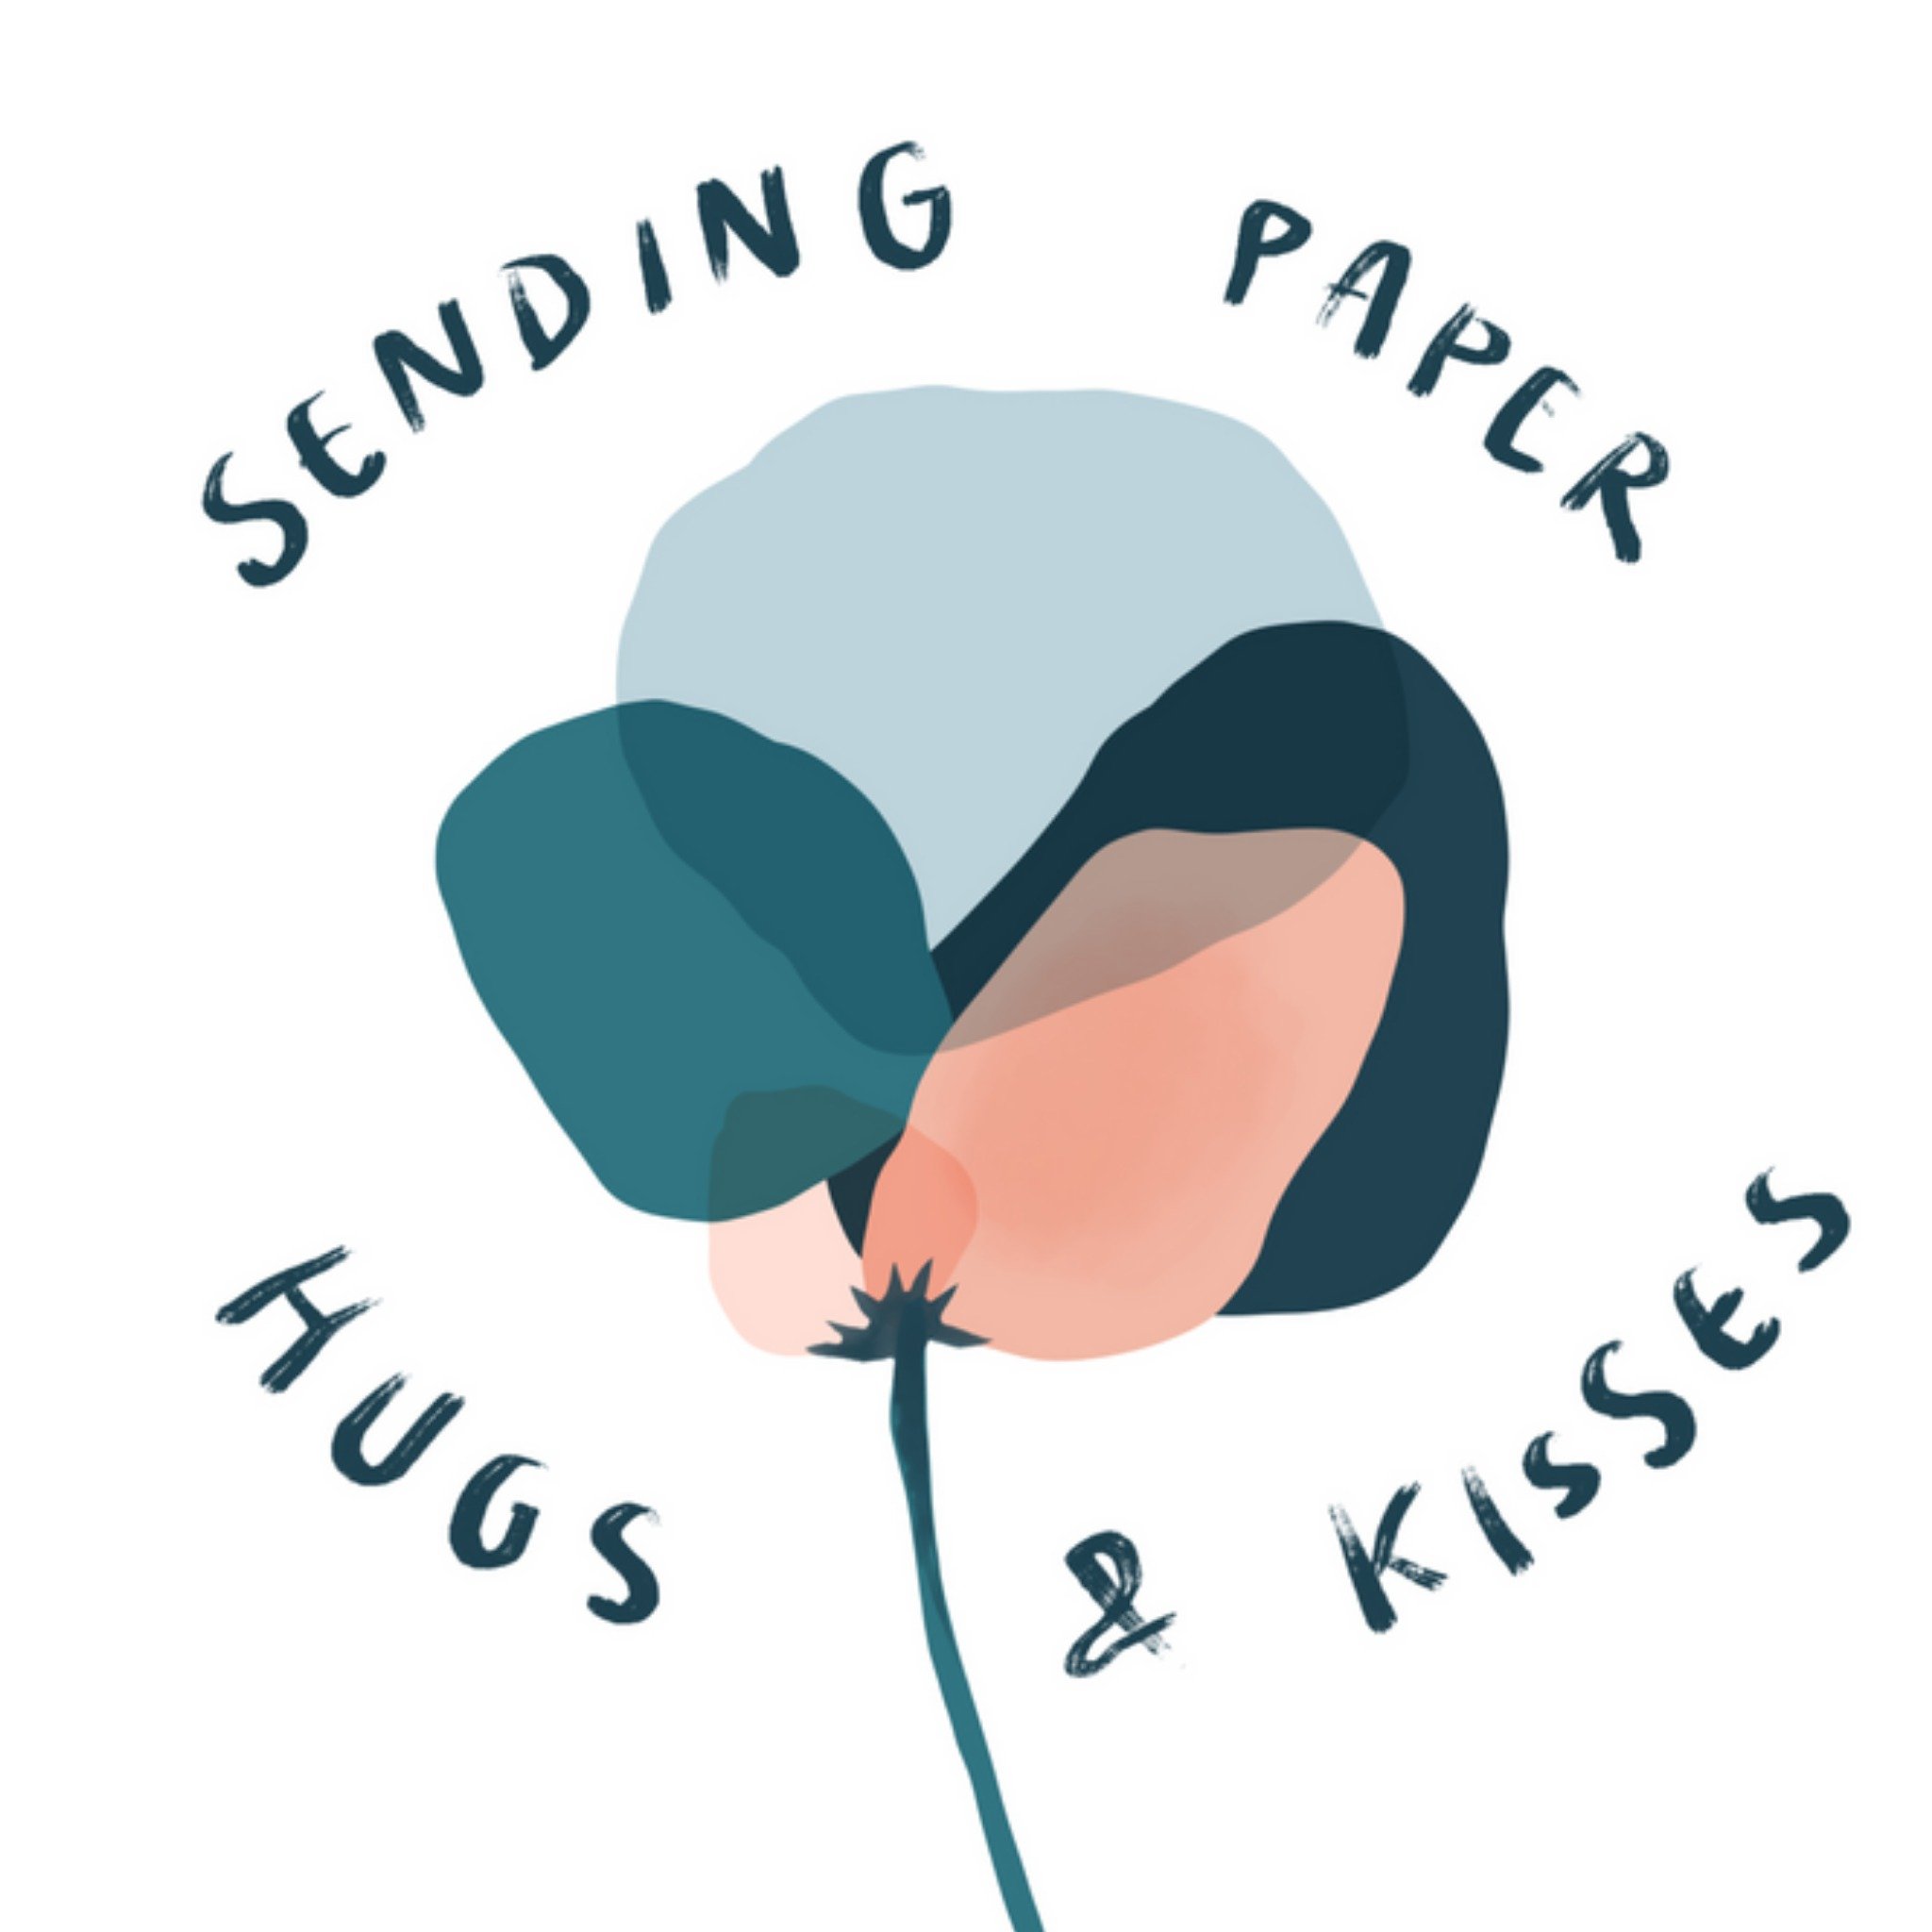 Denken aan - Paper hugs and kisses